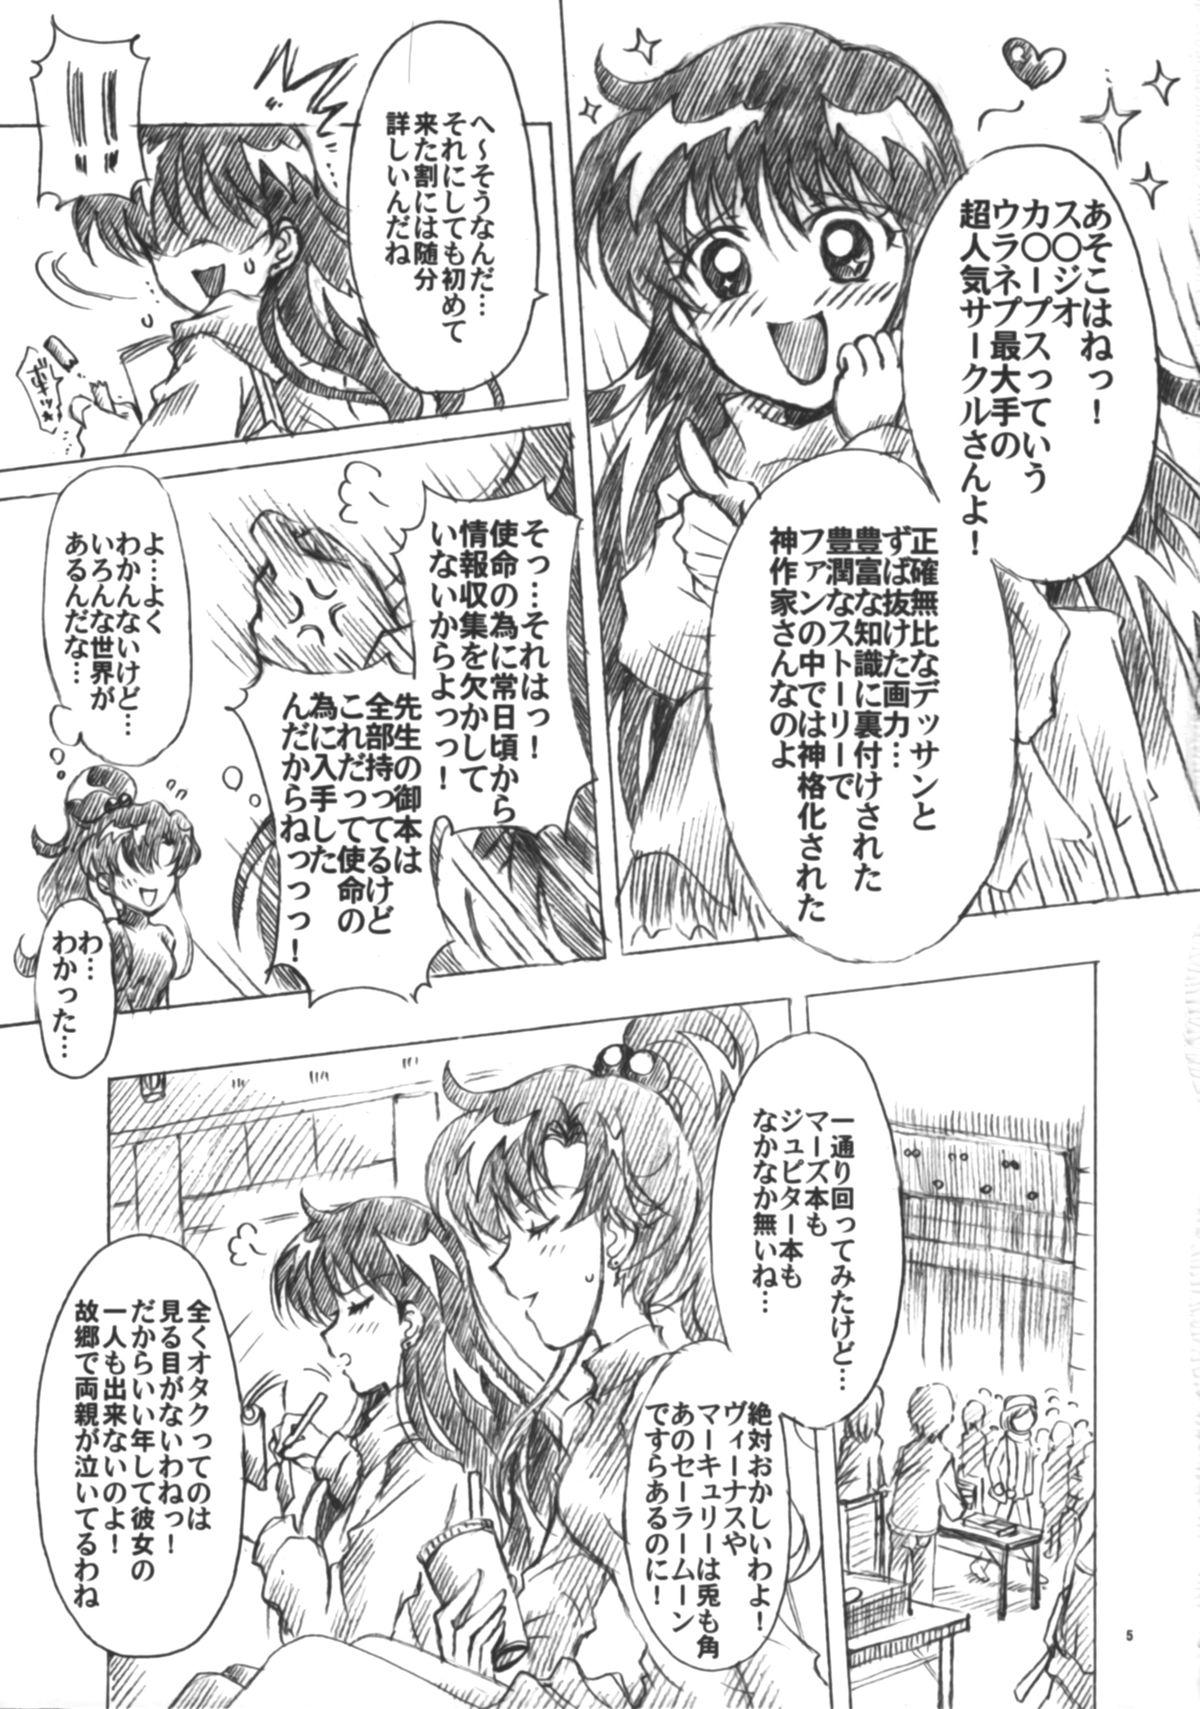 Big Ass Boku no Kanojo wa Sailor Senshi 6 - Sailor moon Milfporn - Page 6